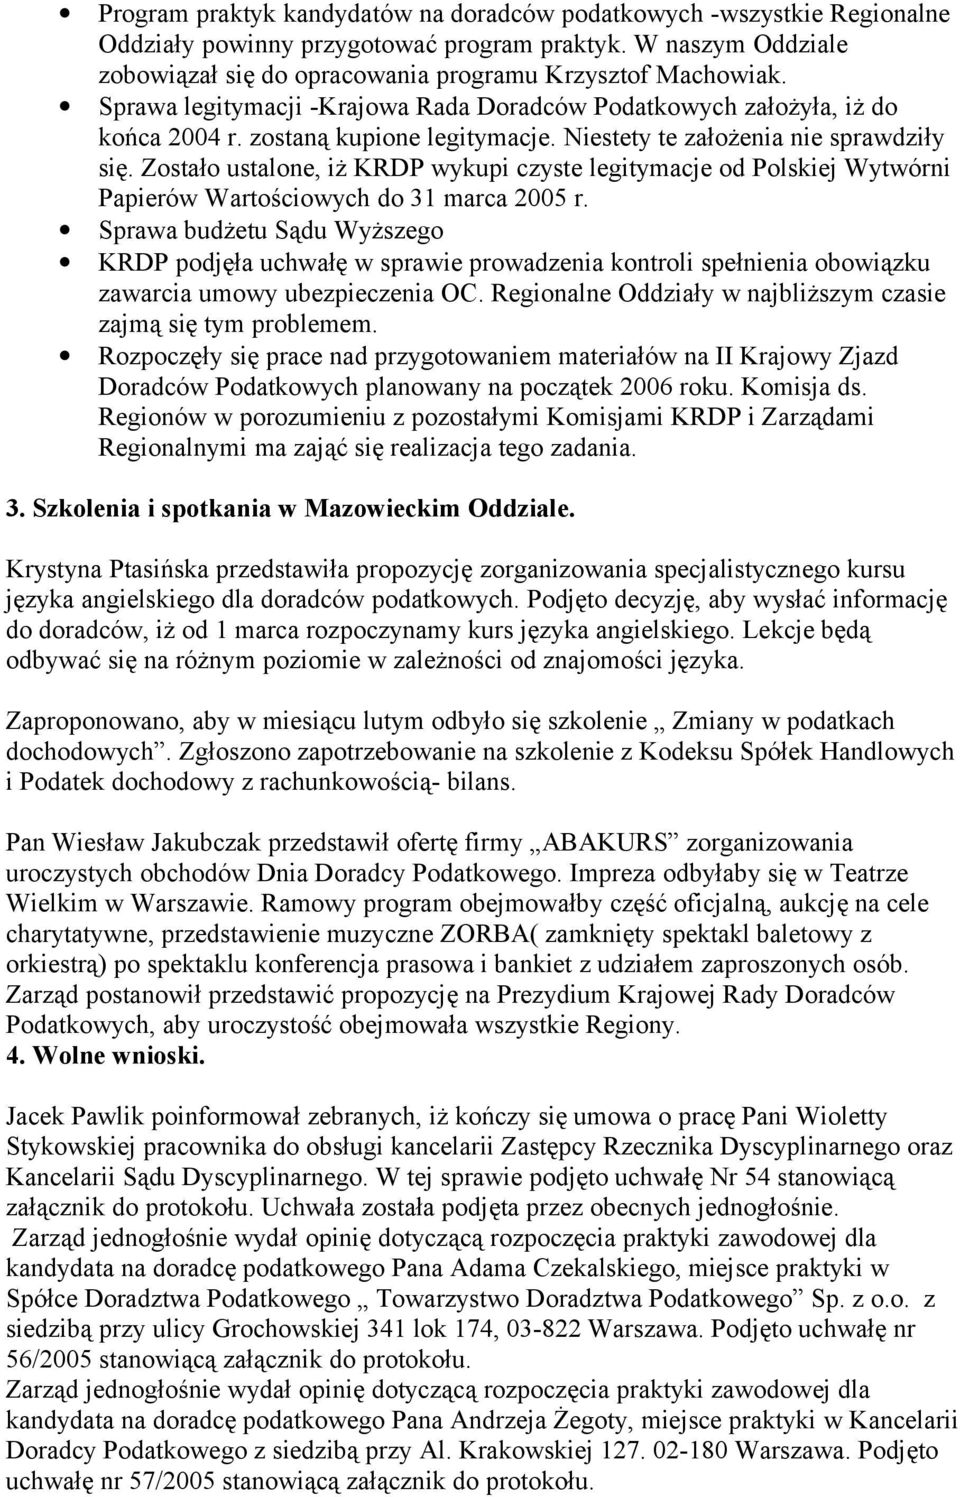 Zostało ustalone, iż KRDP wykupi czyste legitymacje od Polskiej Wytwórni Papierów Wartościowych do 31 marca 2005 r.